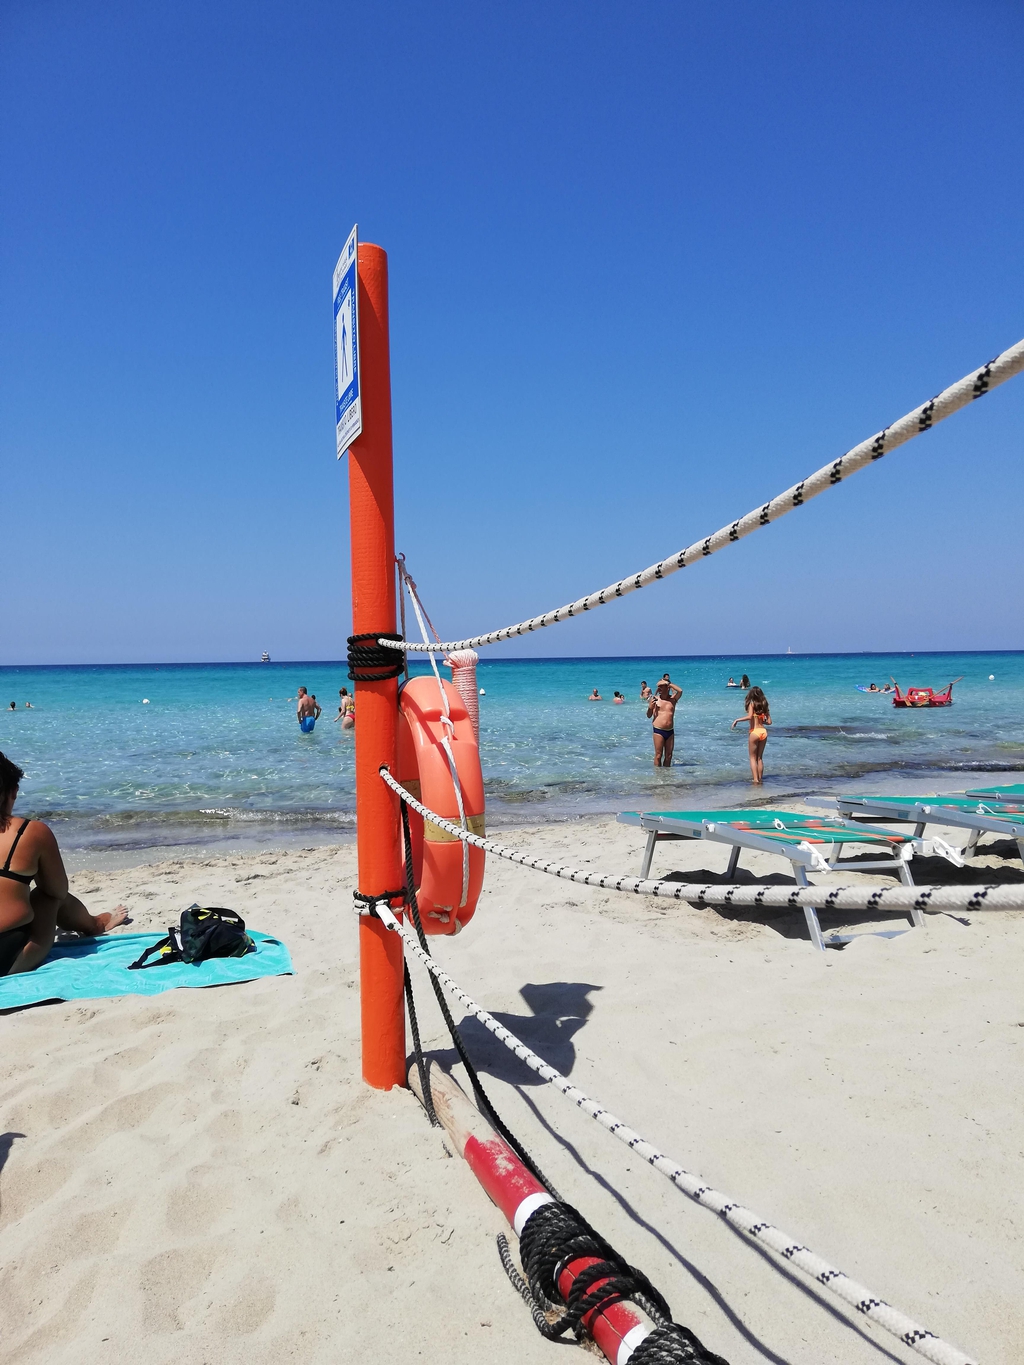 La playa - Gallipoli, (Lecce), Puglia